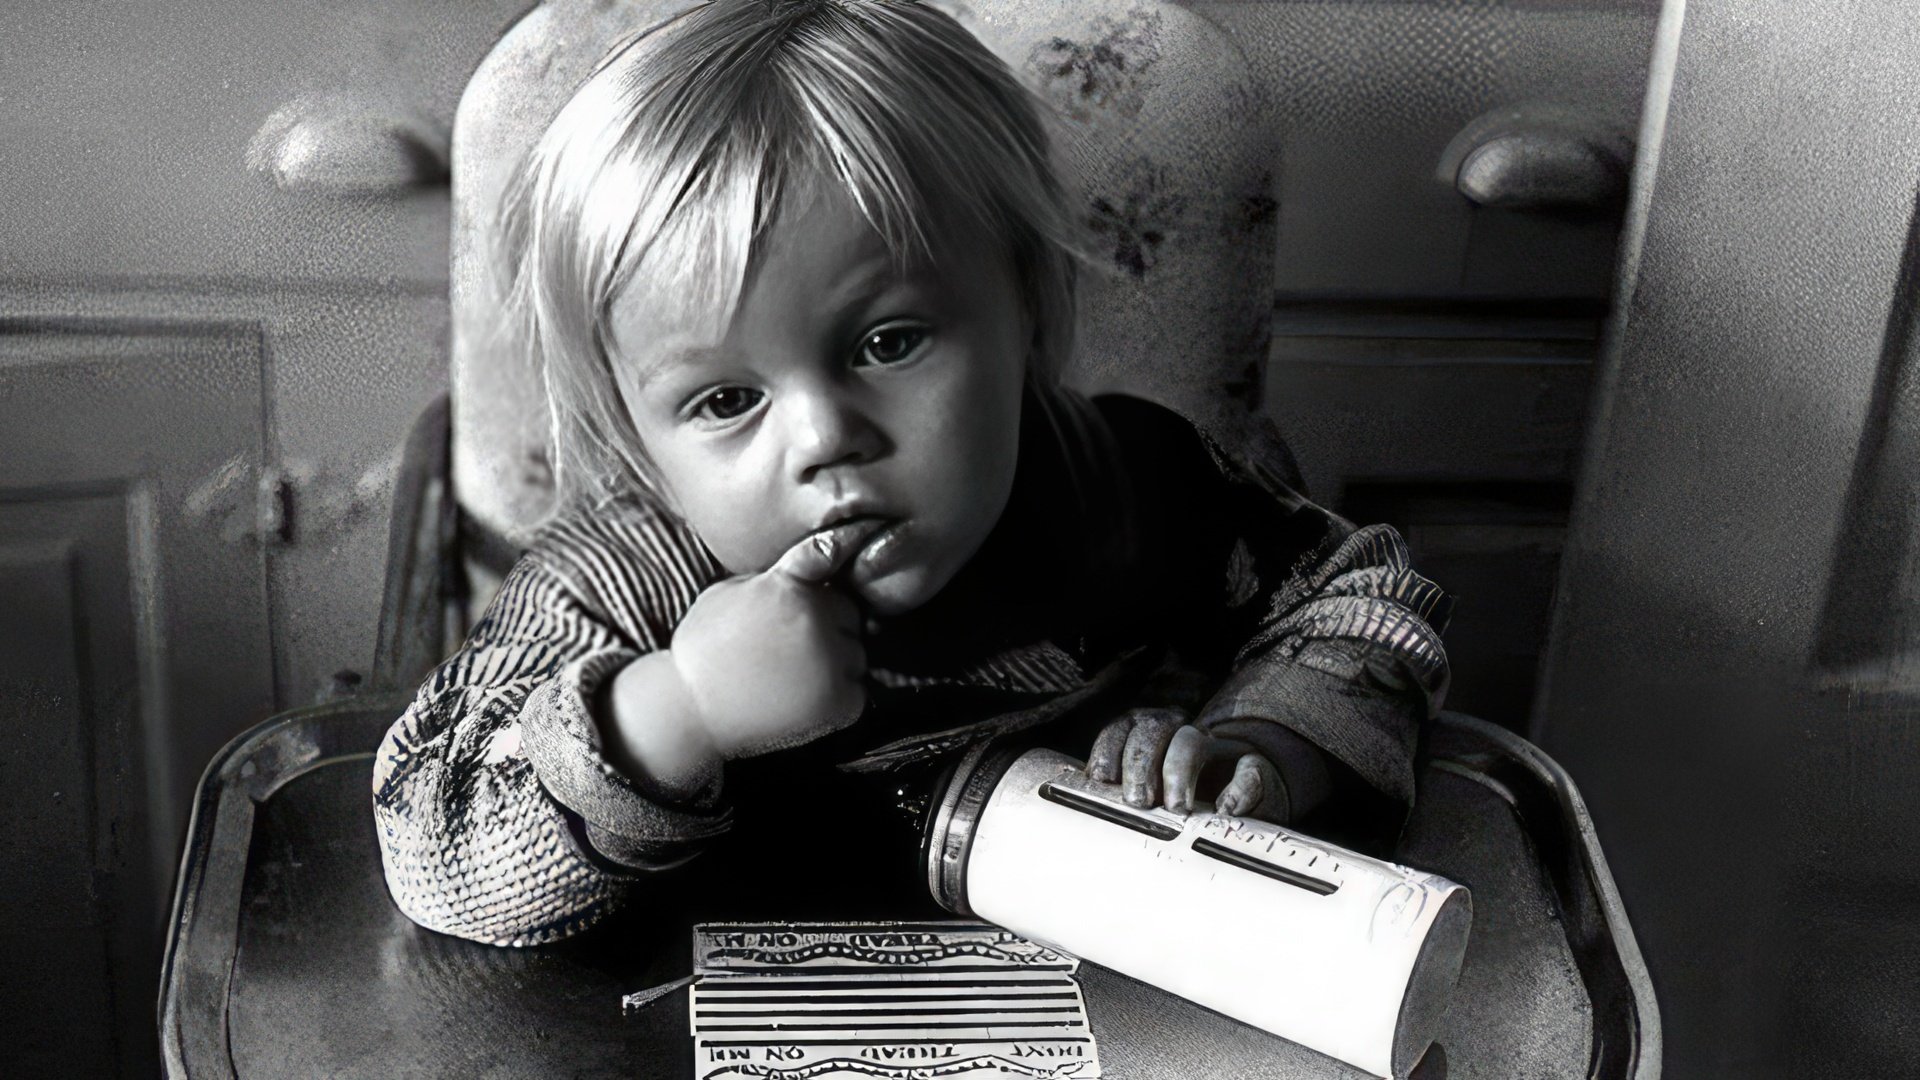 Leonardo DiCaprio as a child